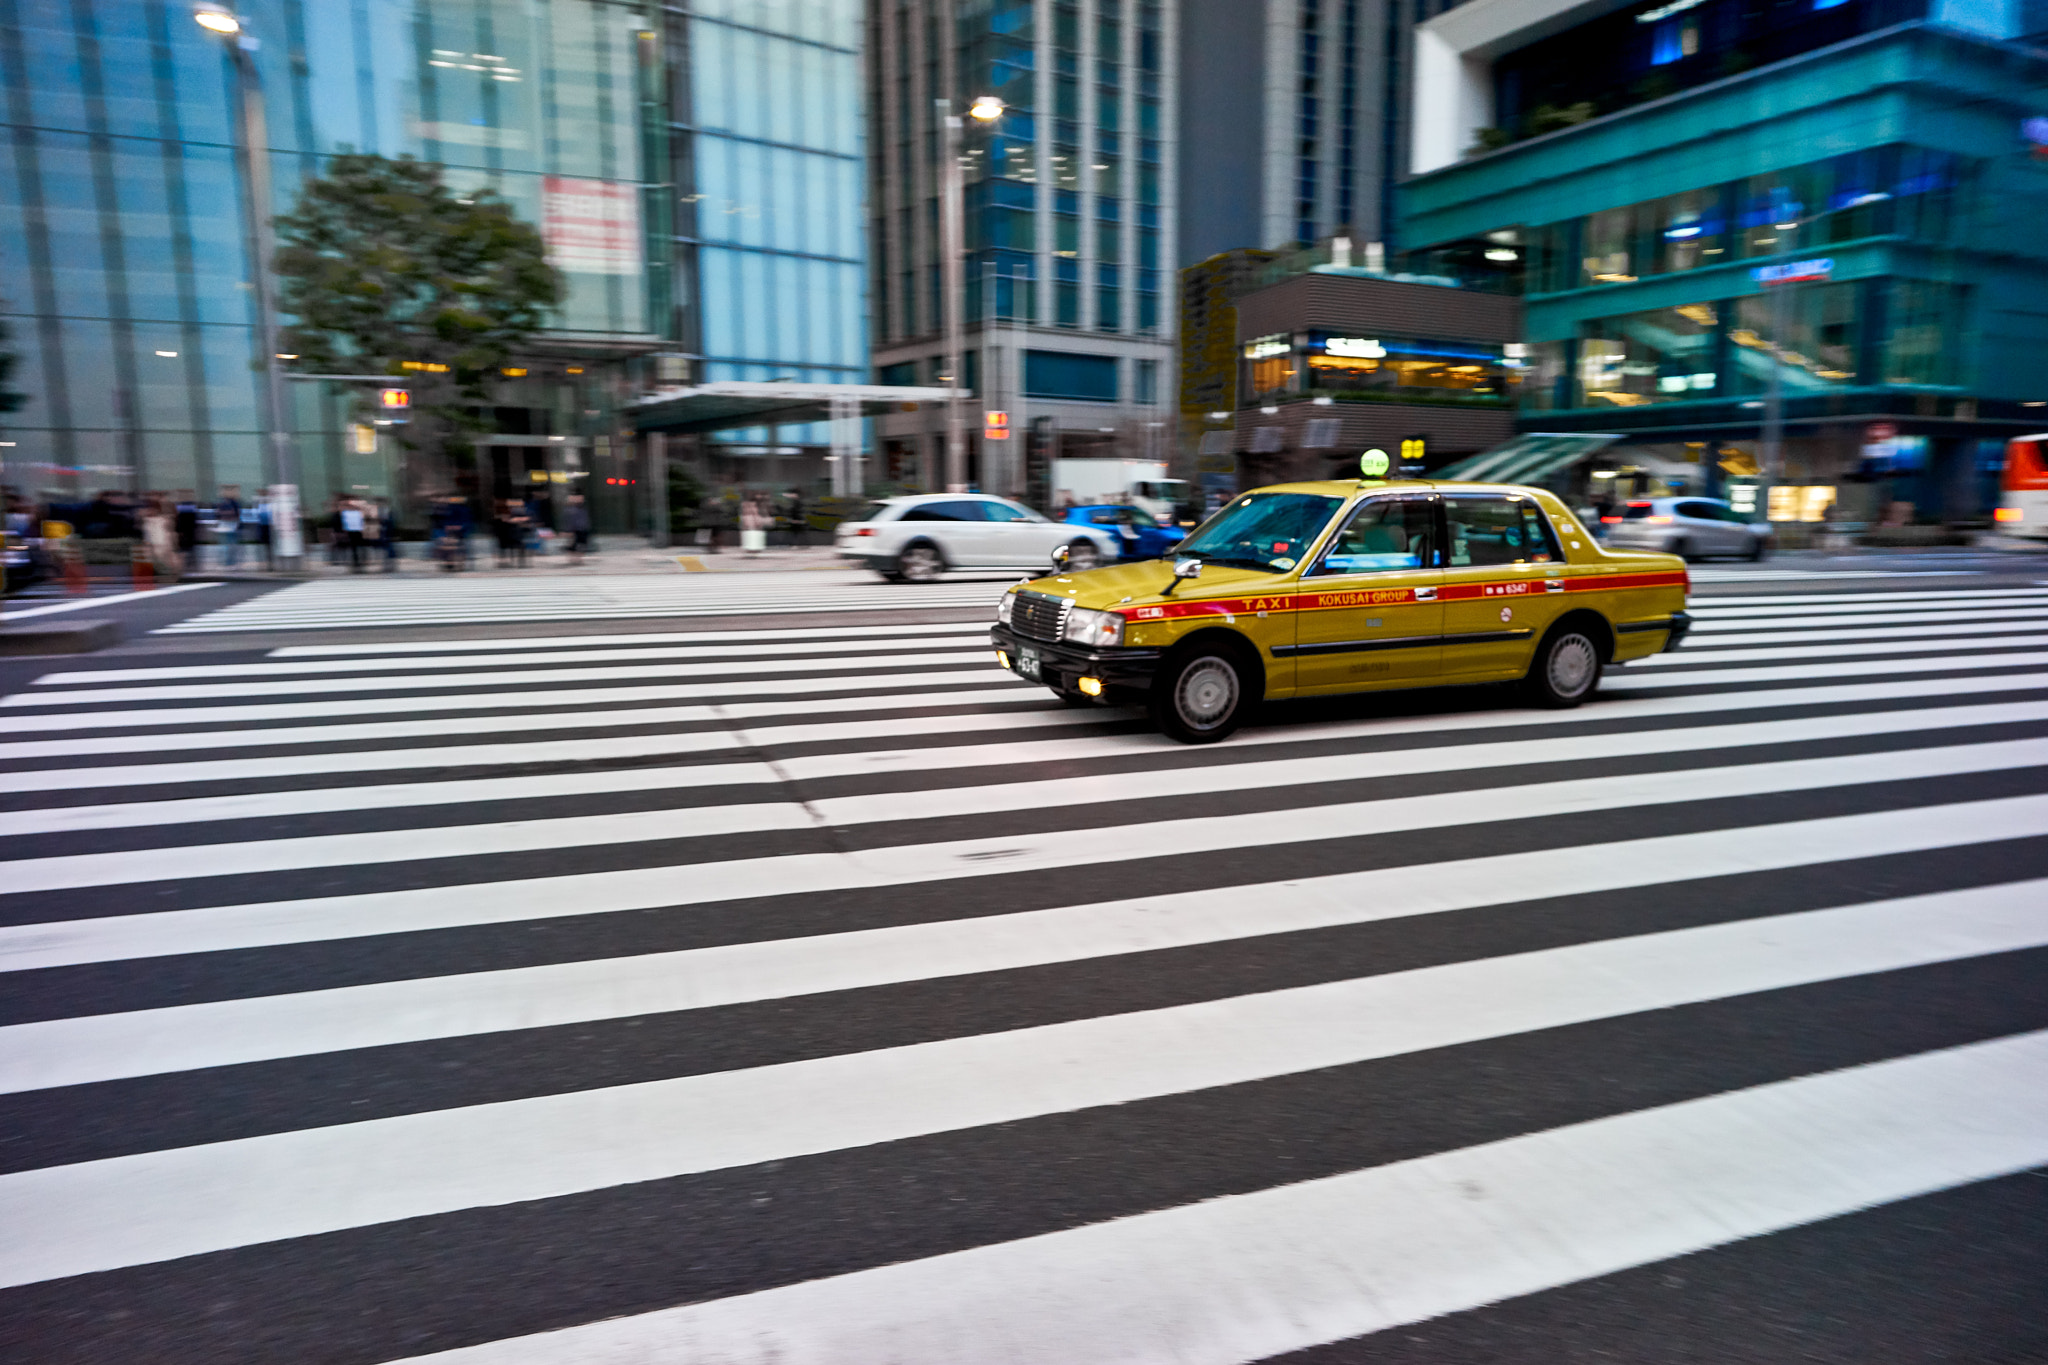 Voigtländer Color-Skopar 21mm f/4.0 P sample photo. Tokyo taxi photography